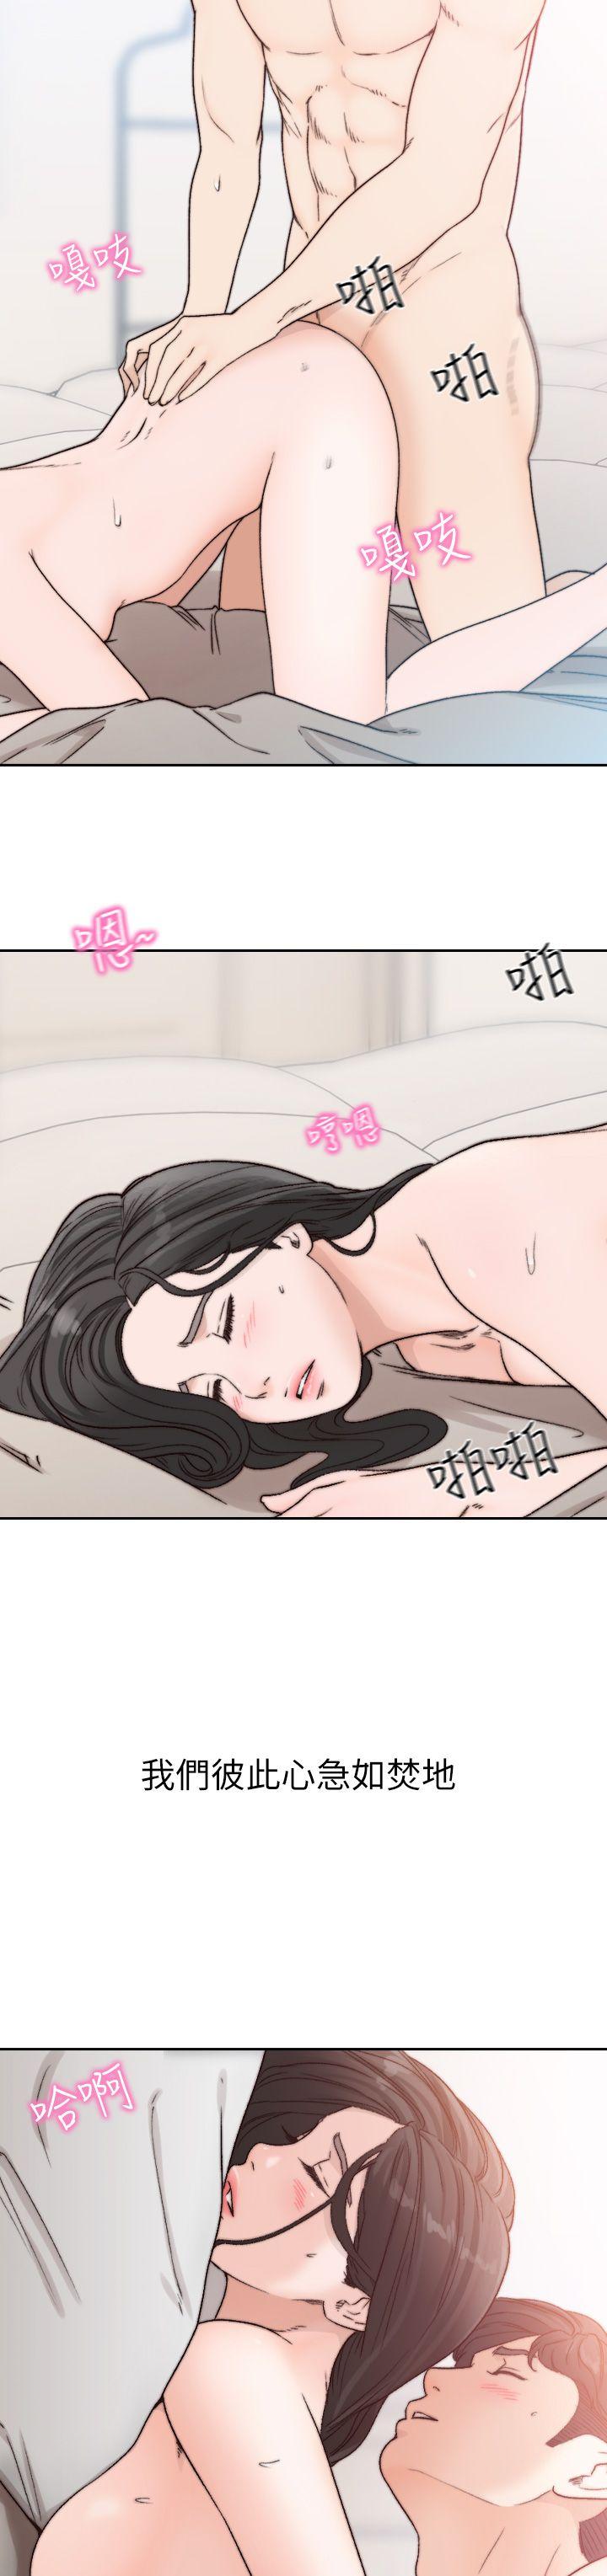 韩国污漫画 前女友 第15话-偶尔放荡销魂 23